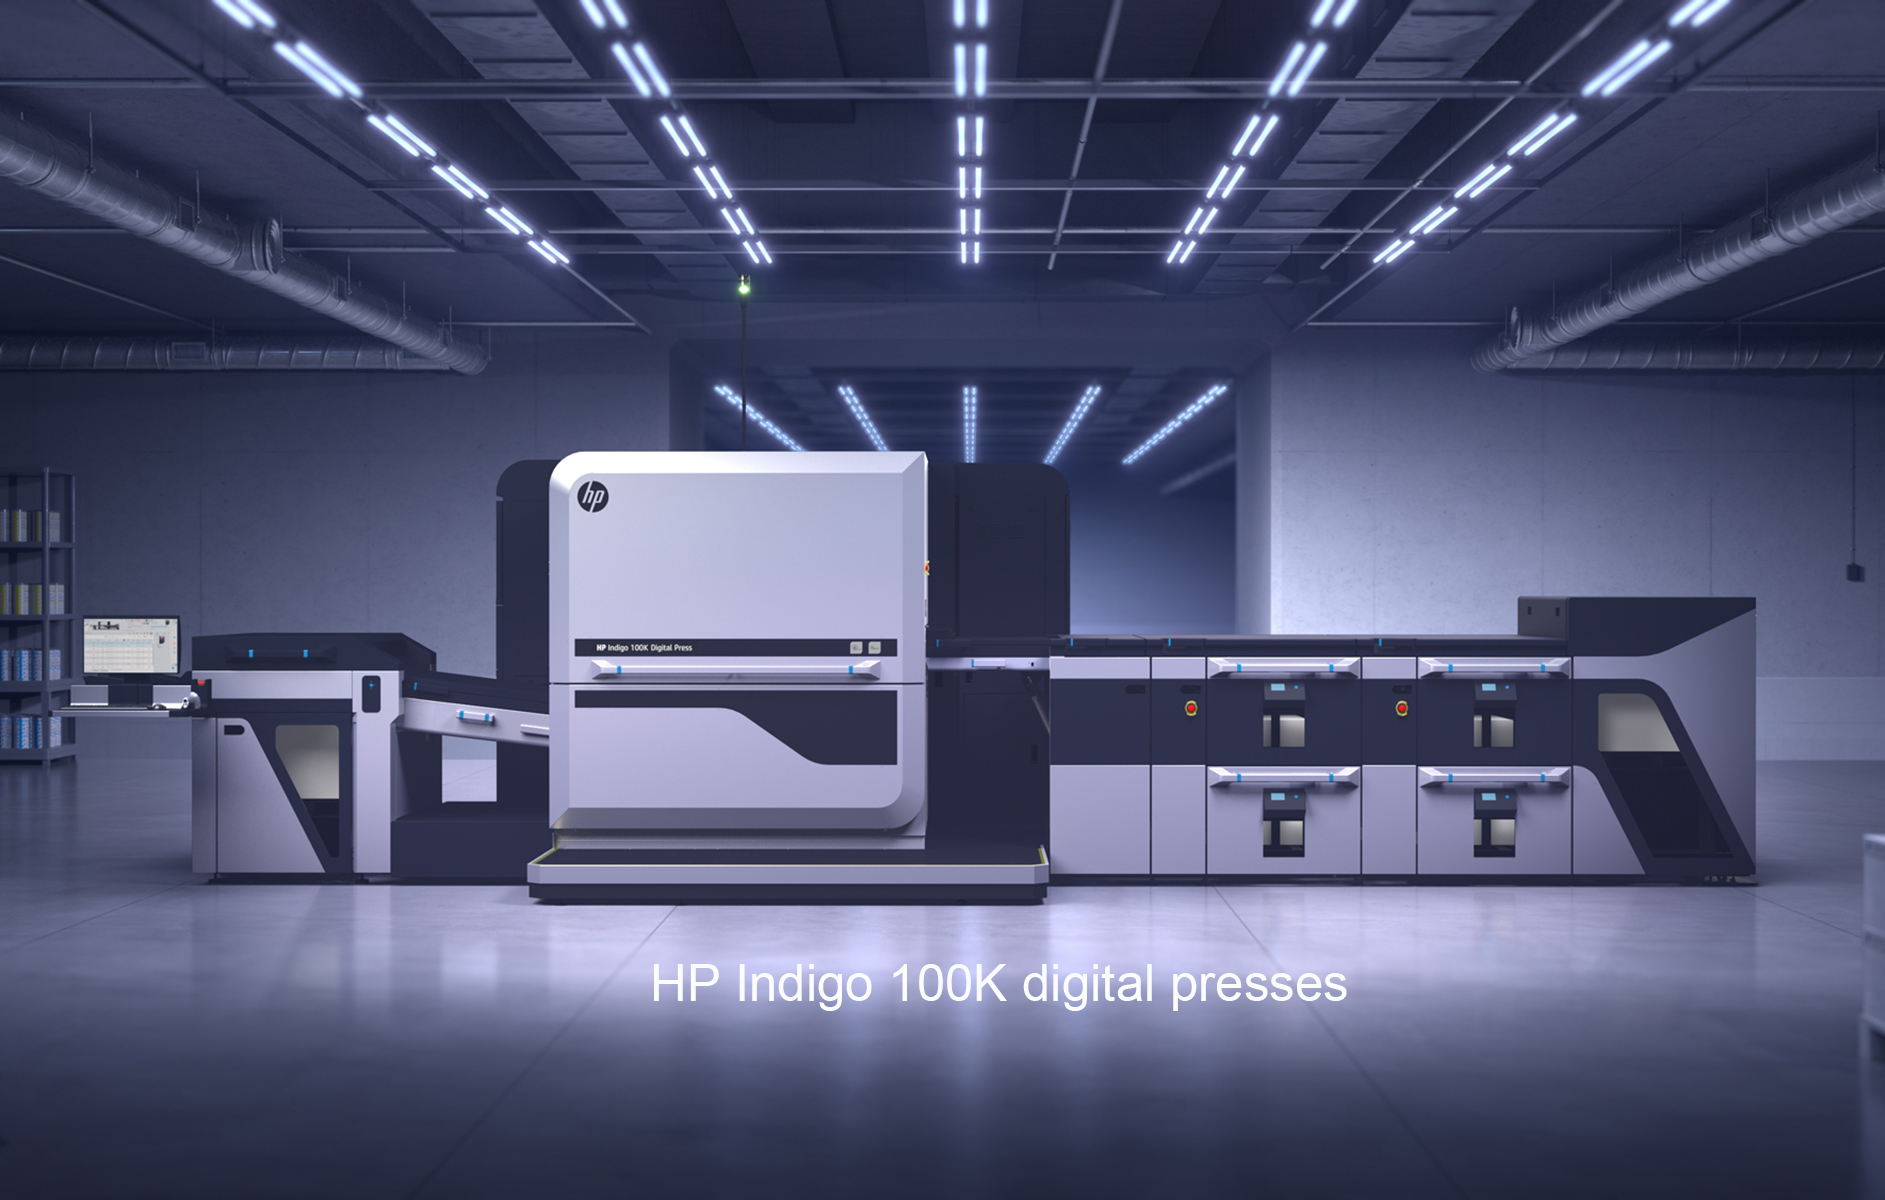 เอชพี และ ชัตเตอร์ฟลาย เผยการเพิ่มเครื่องพิมพ์ดิจิทัล HP Indigo เร่งการเติบโตตลาดของขวัญเฉพาะบุคคลและการพิมพ์ภาพถ่าย